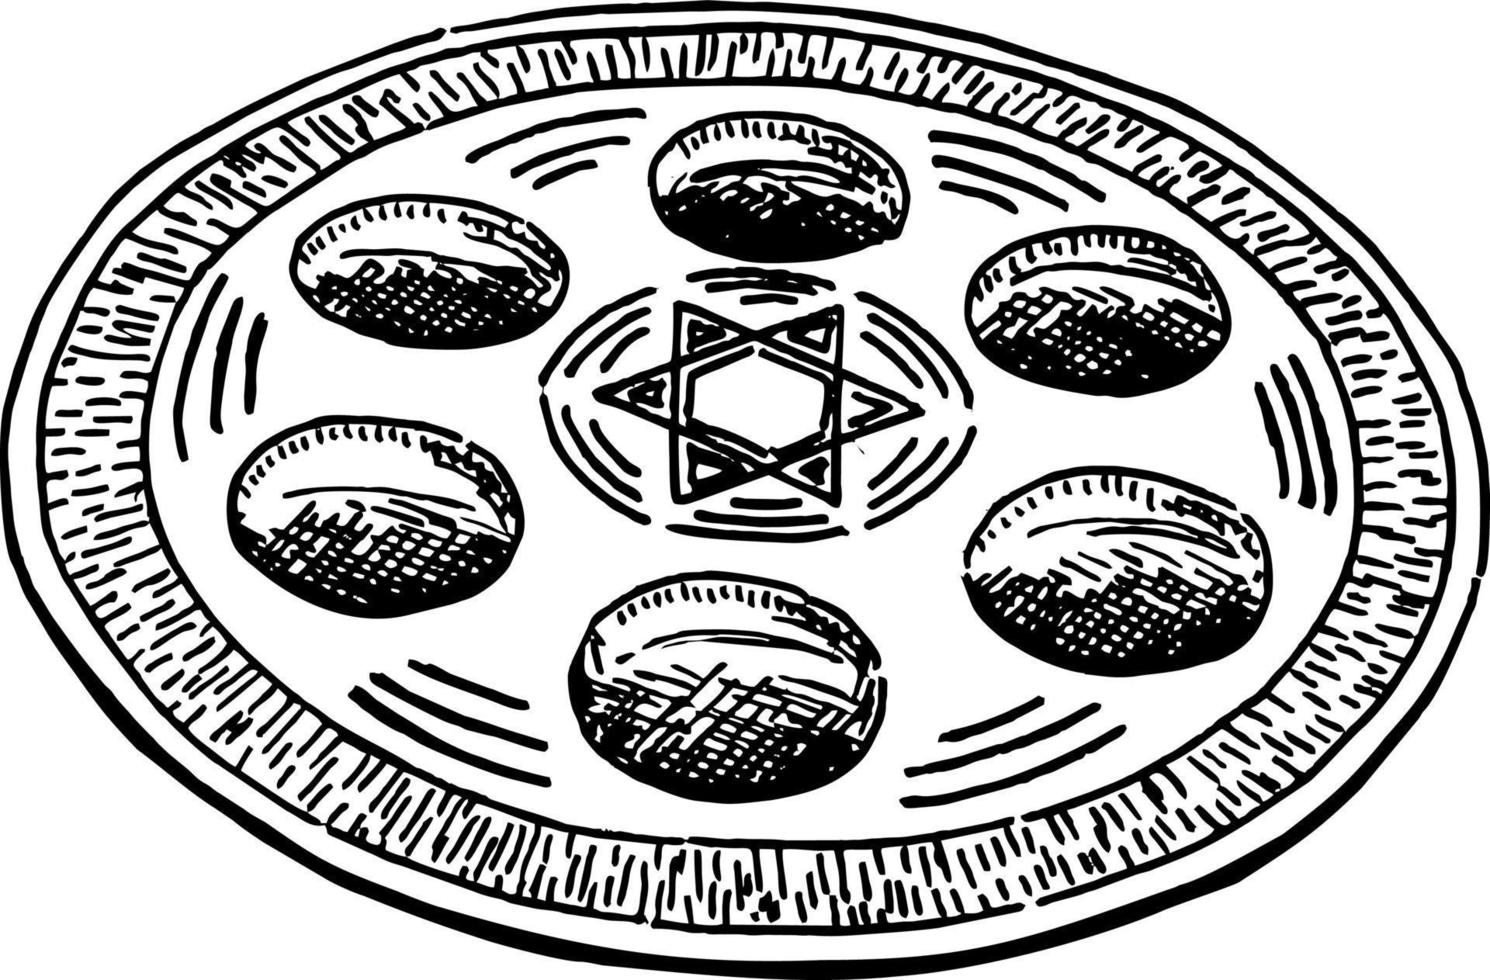 Pascha seder bord schetsen. de Pascha seder bord is een speciaal bord met symbolisch voedingsmiddelen gegeten of weergegeven Bij de Pascha seder vector